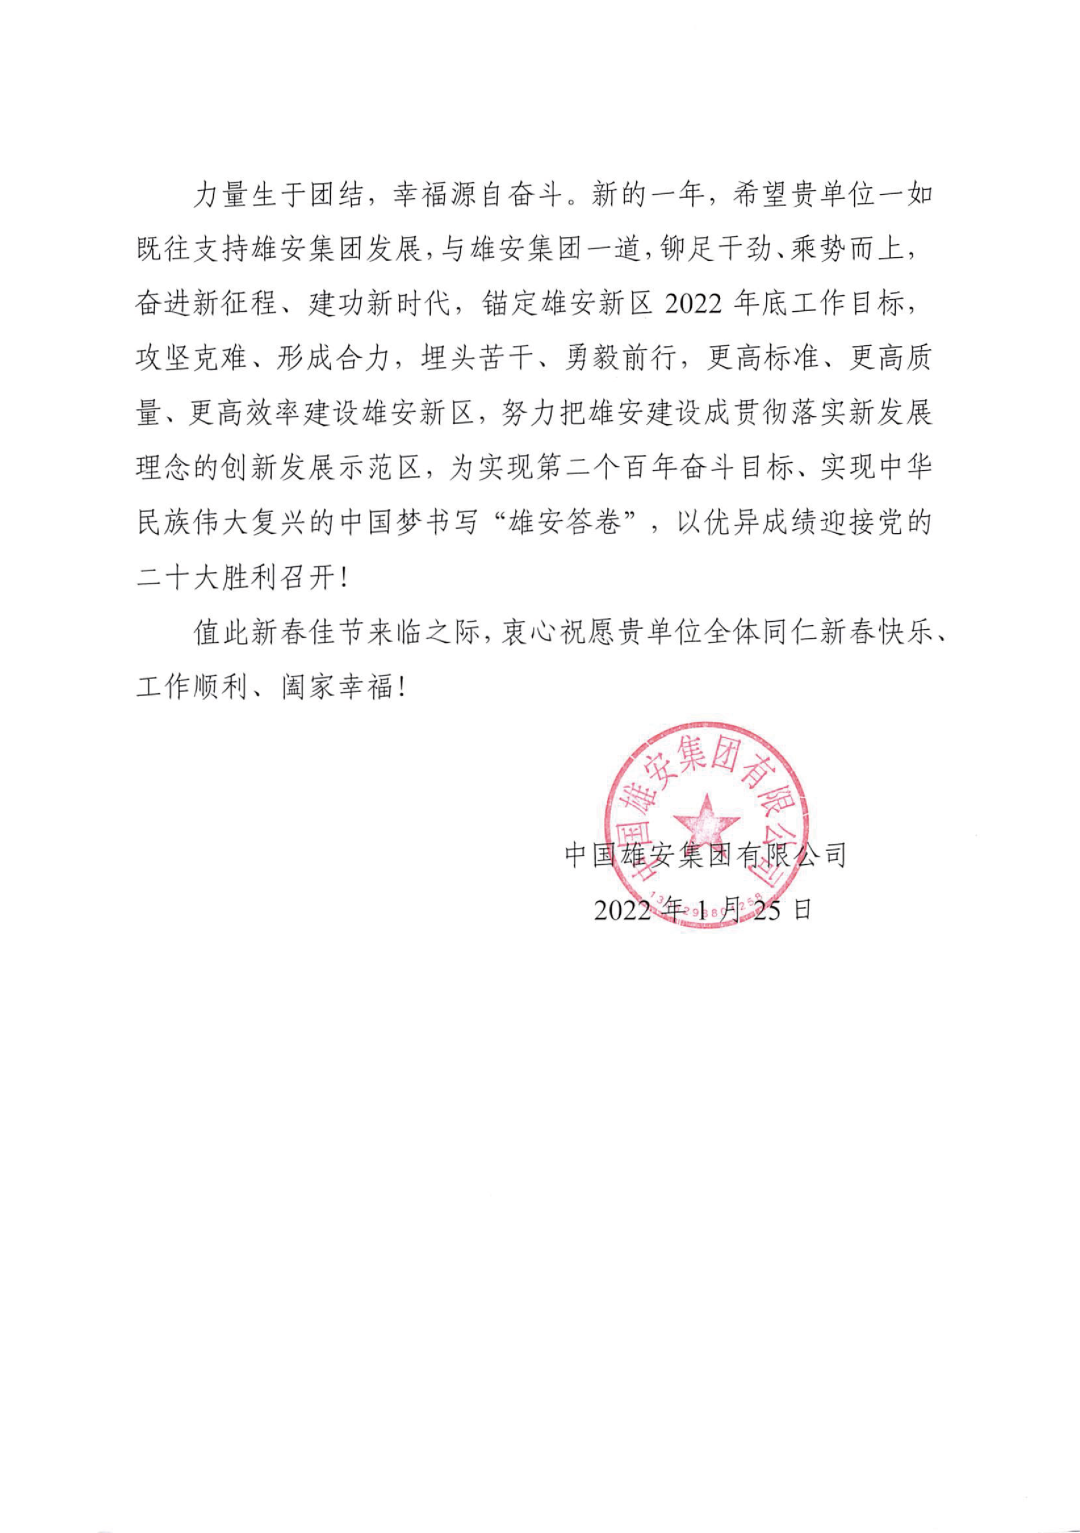 中国雄安集团感谢北京市炜衡律师事务所提供高质量法律服务